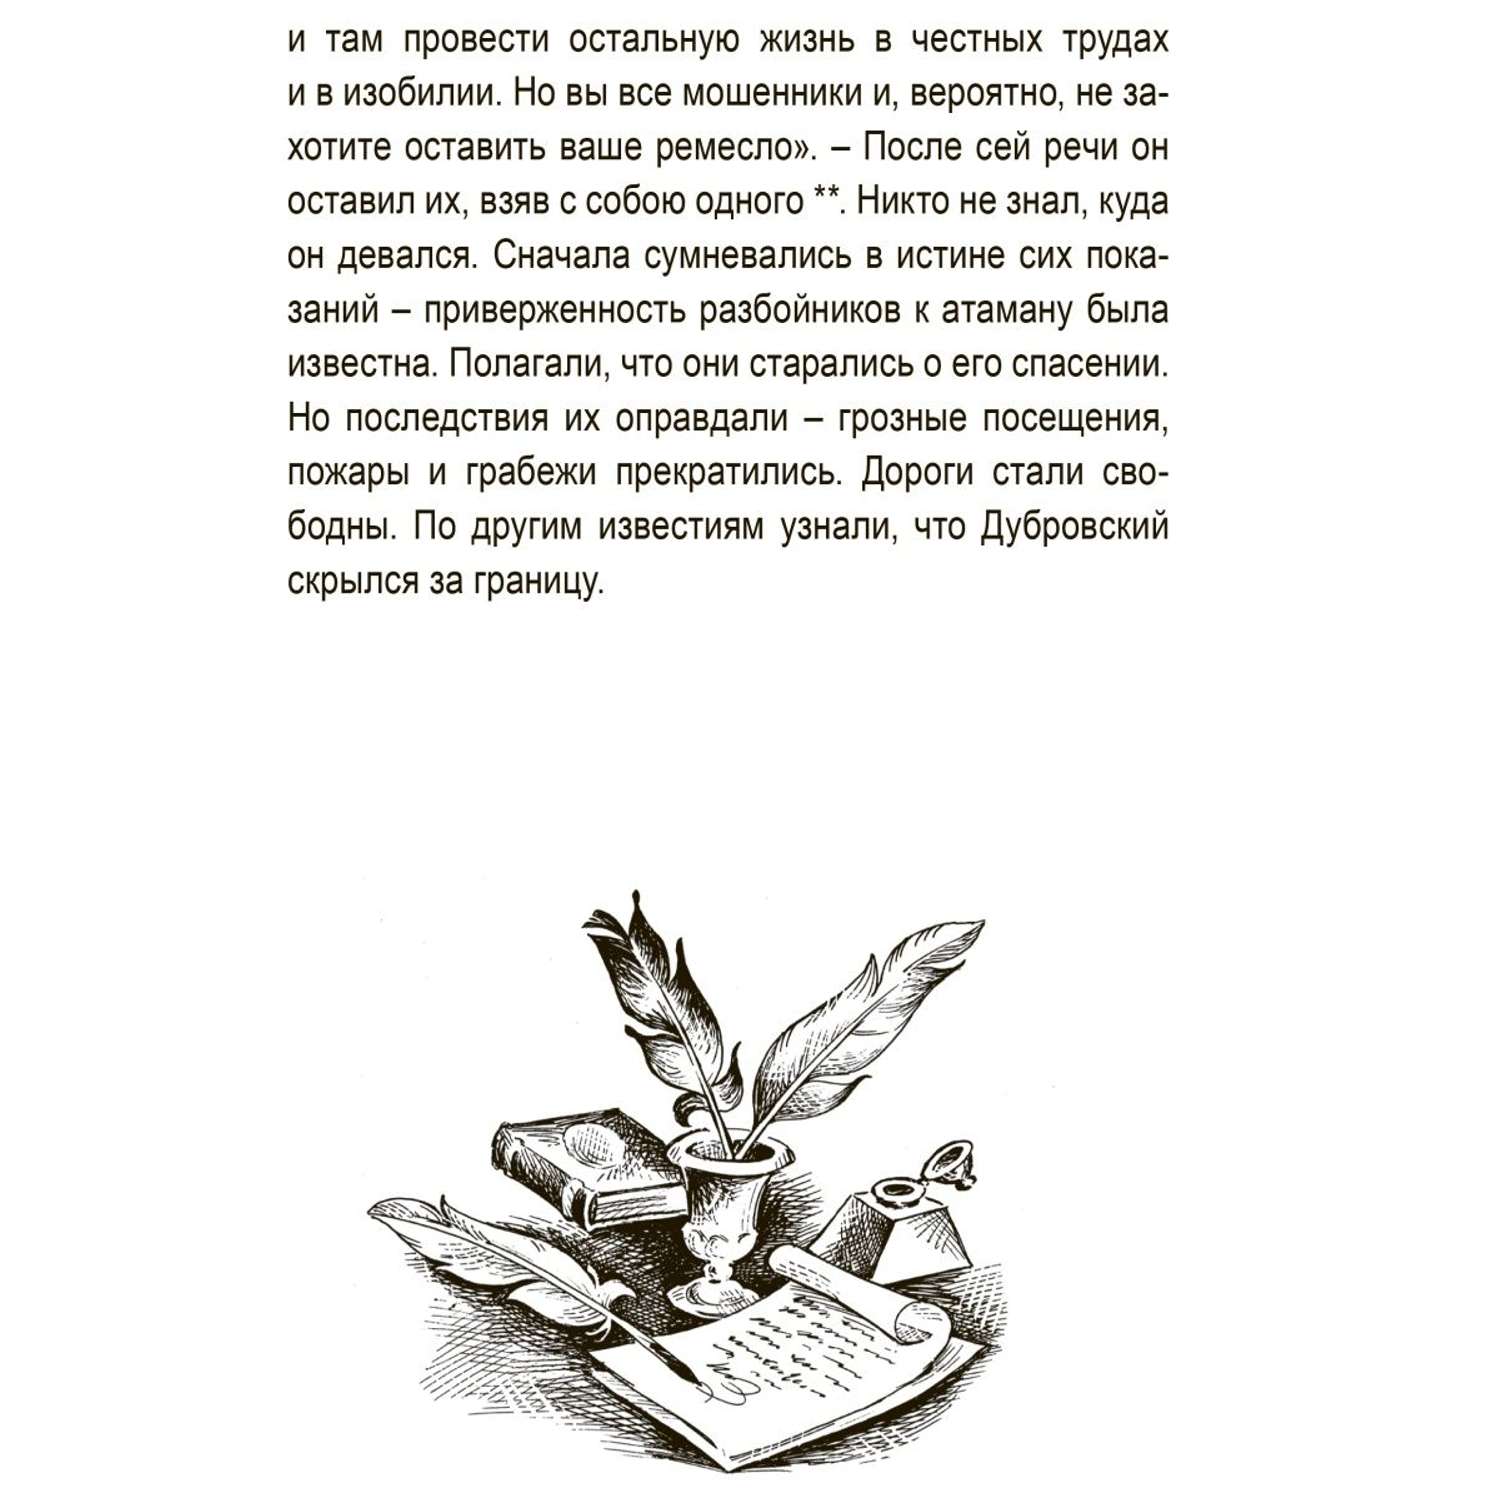 Книга Алтей для детей «Дубровский» и «Евгений Онегин» набор 2 шт. - фото 7